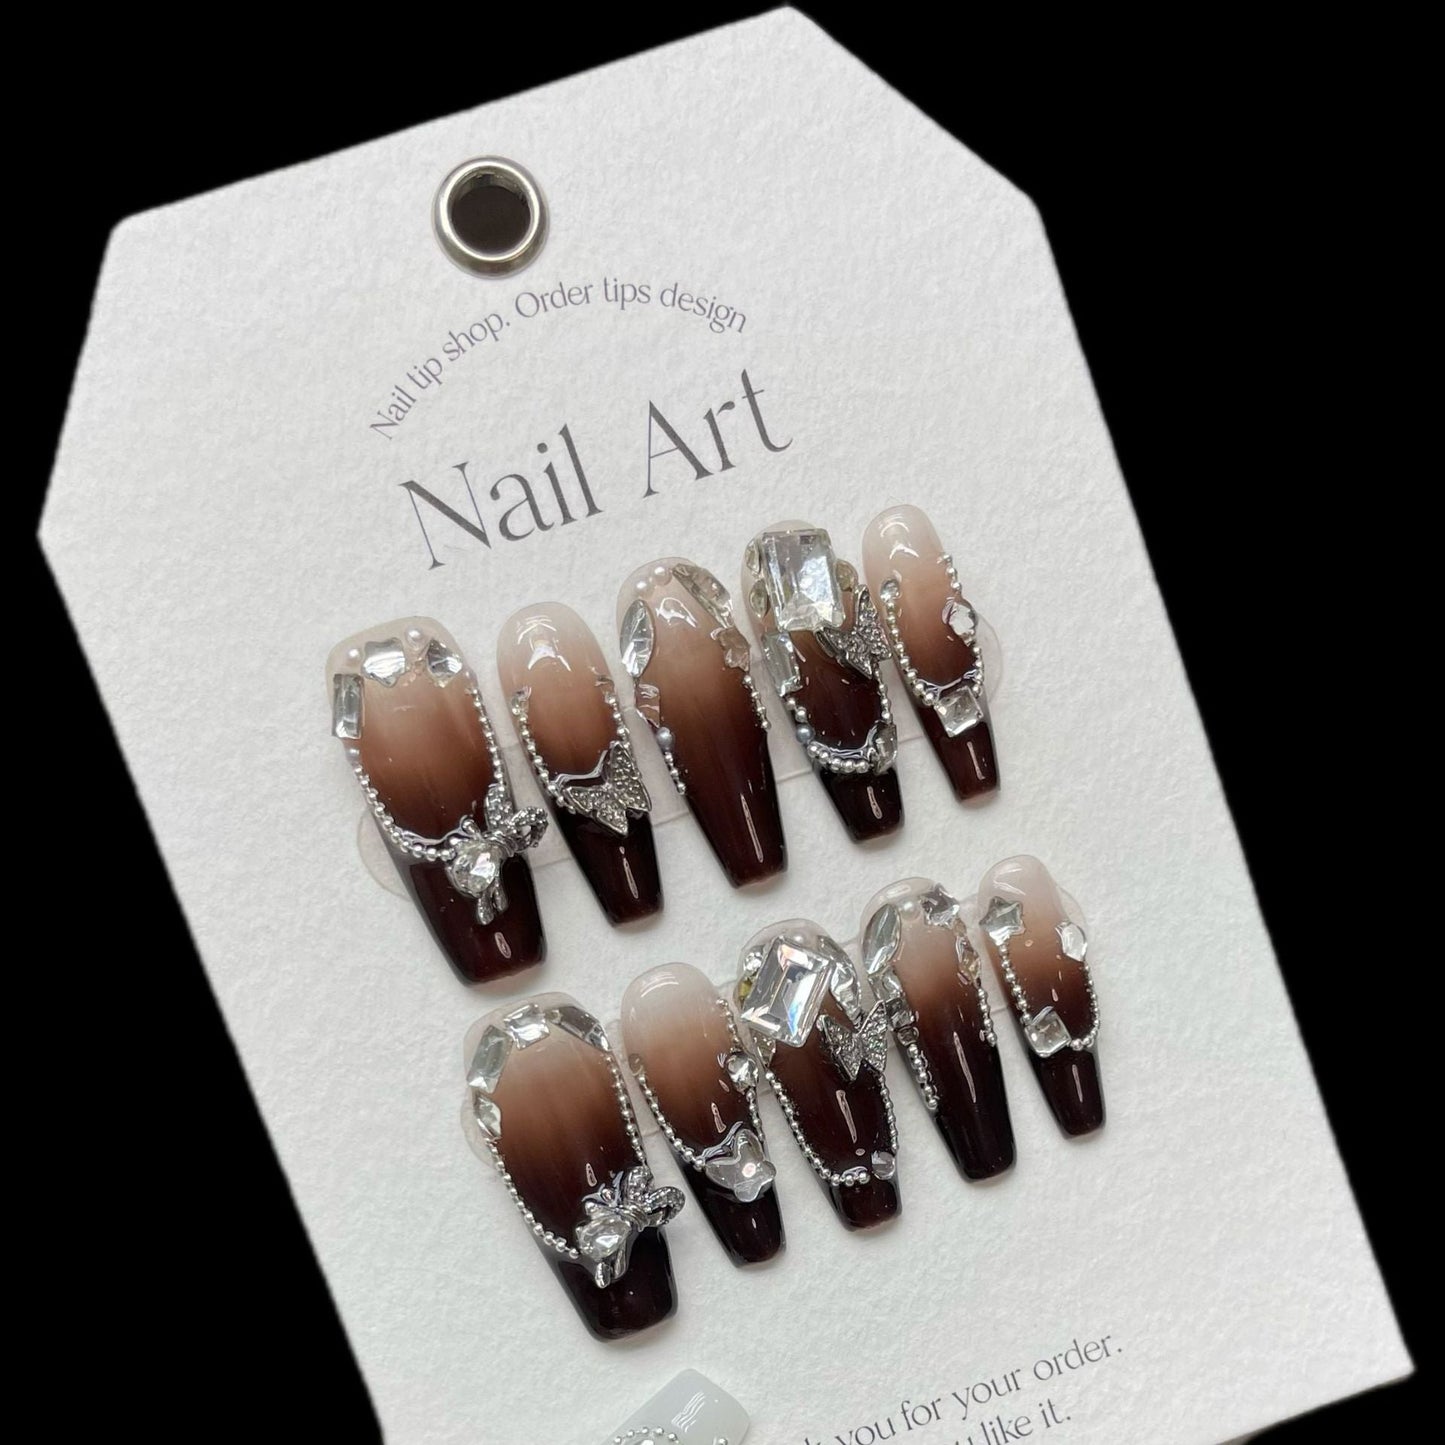 1067 Vlinder strass-stijl pers op nagels 100% handgemaakte kunstnagels bruin